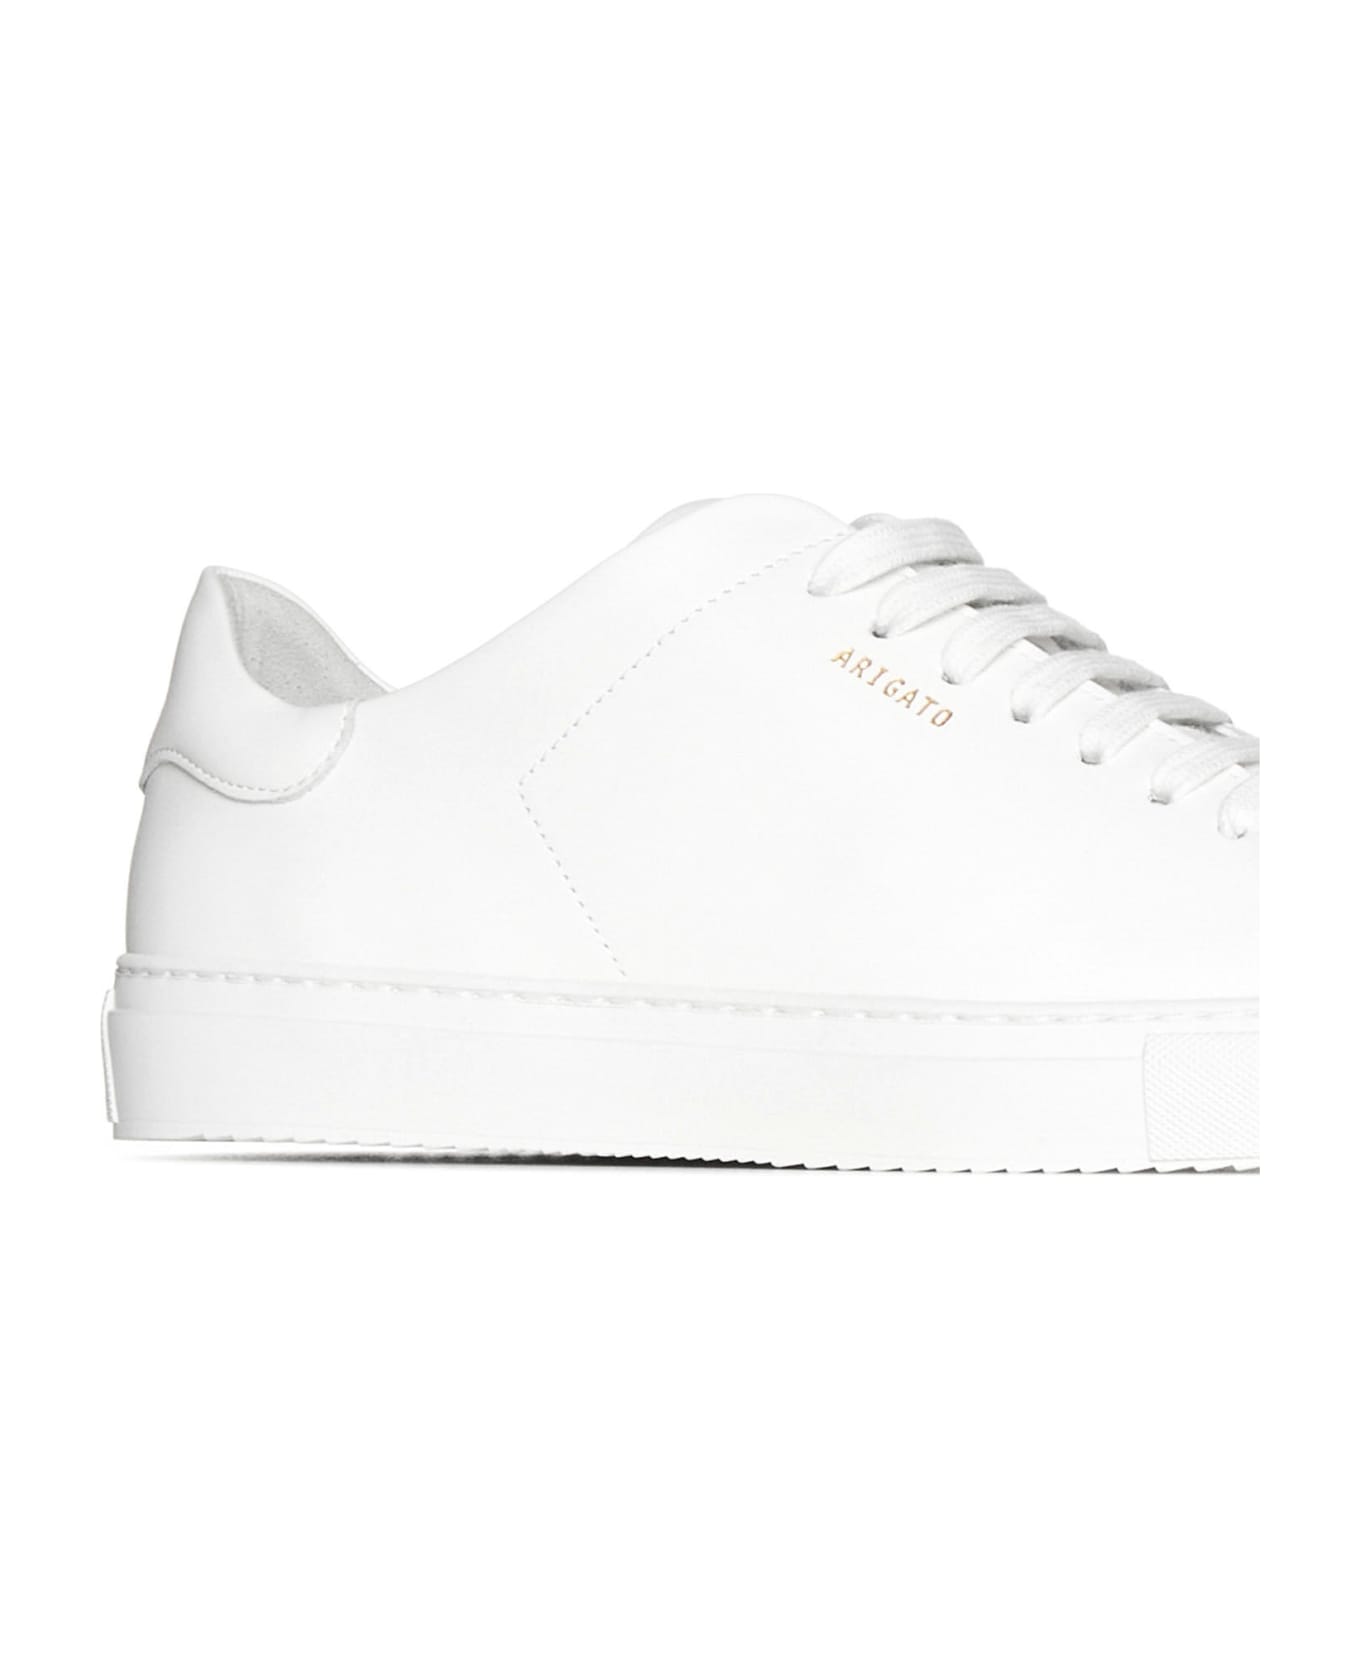 Axel Arigato Sneakers - White